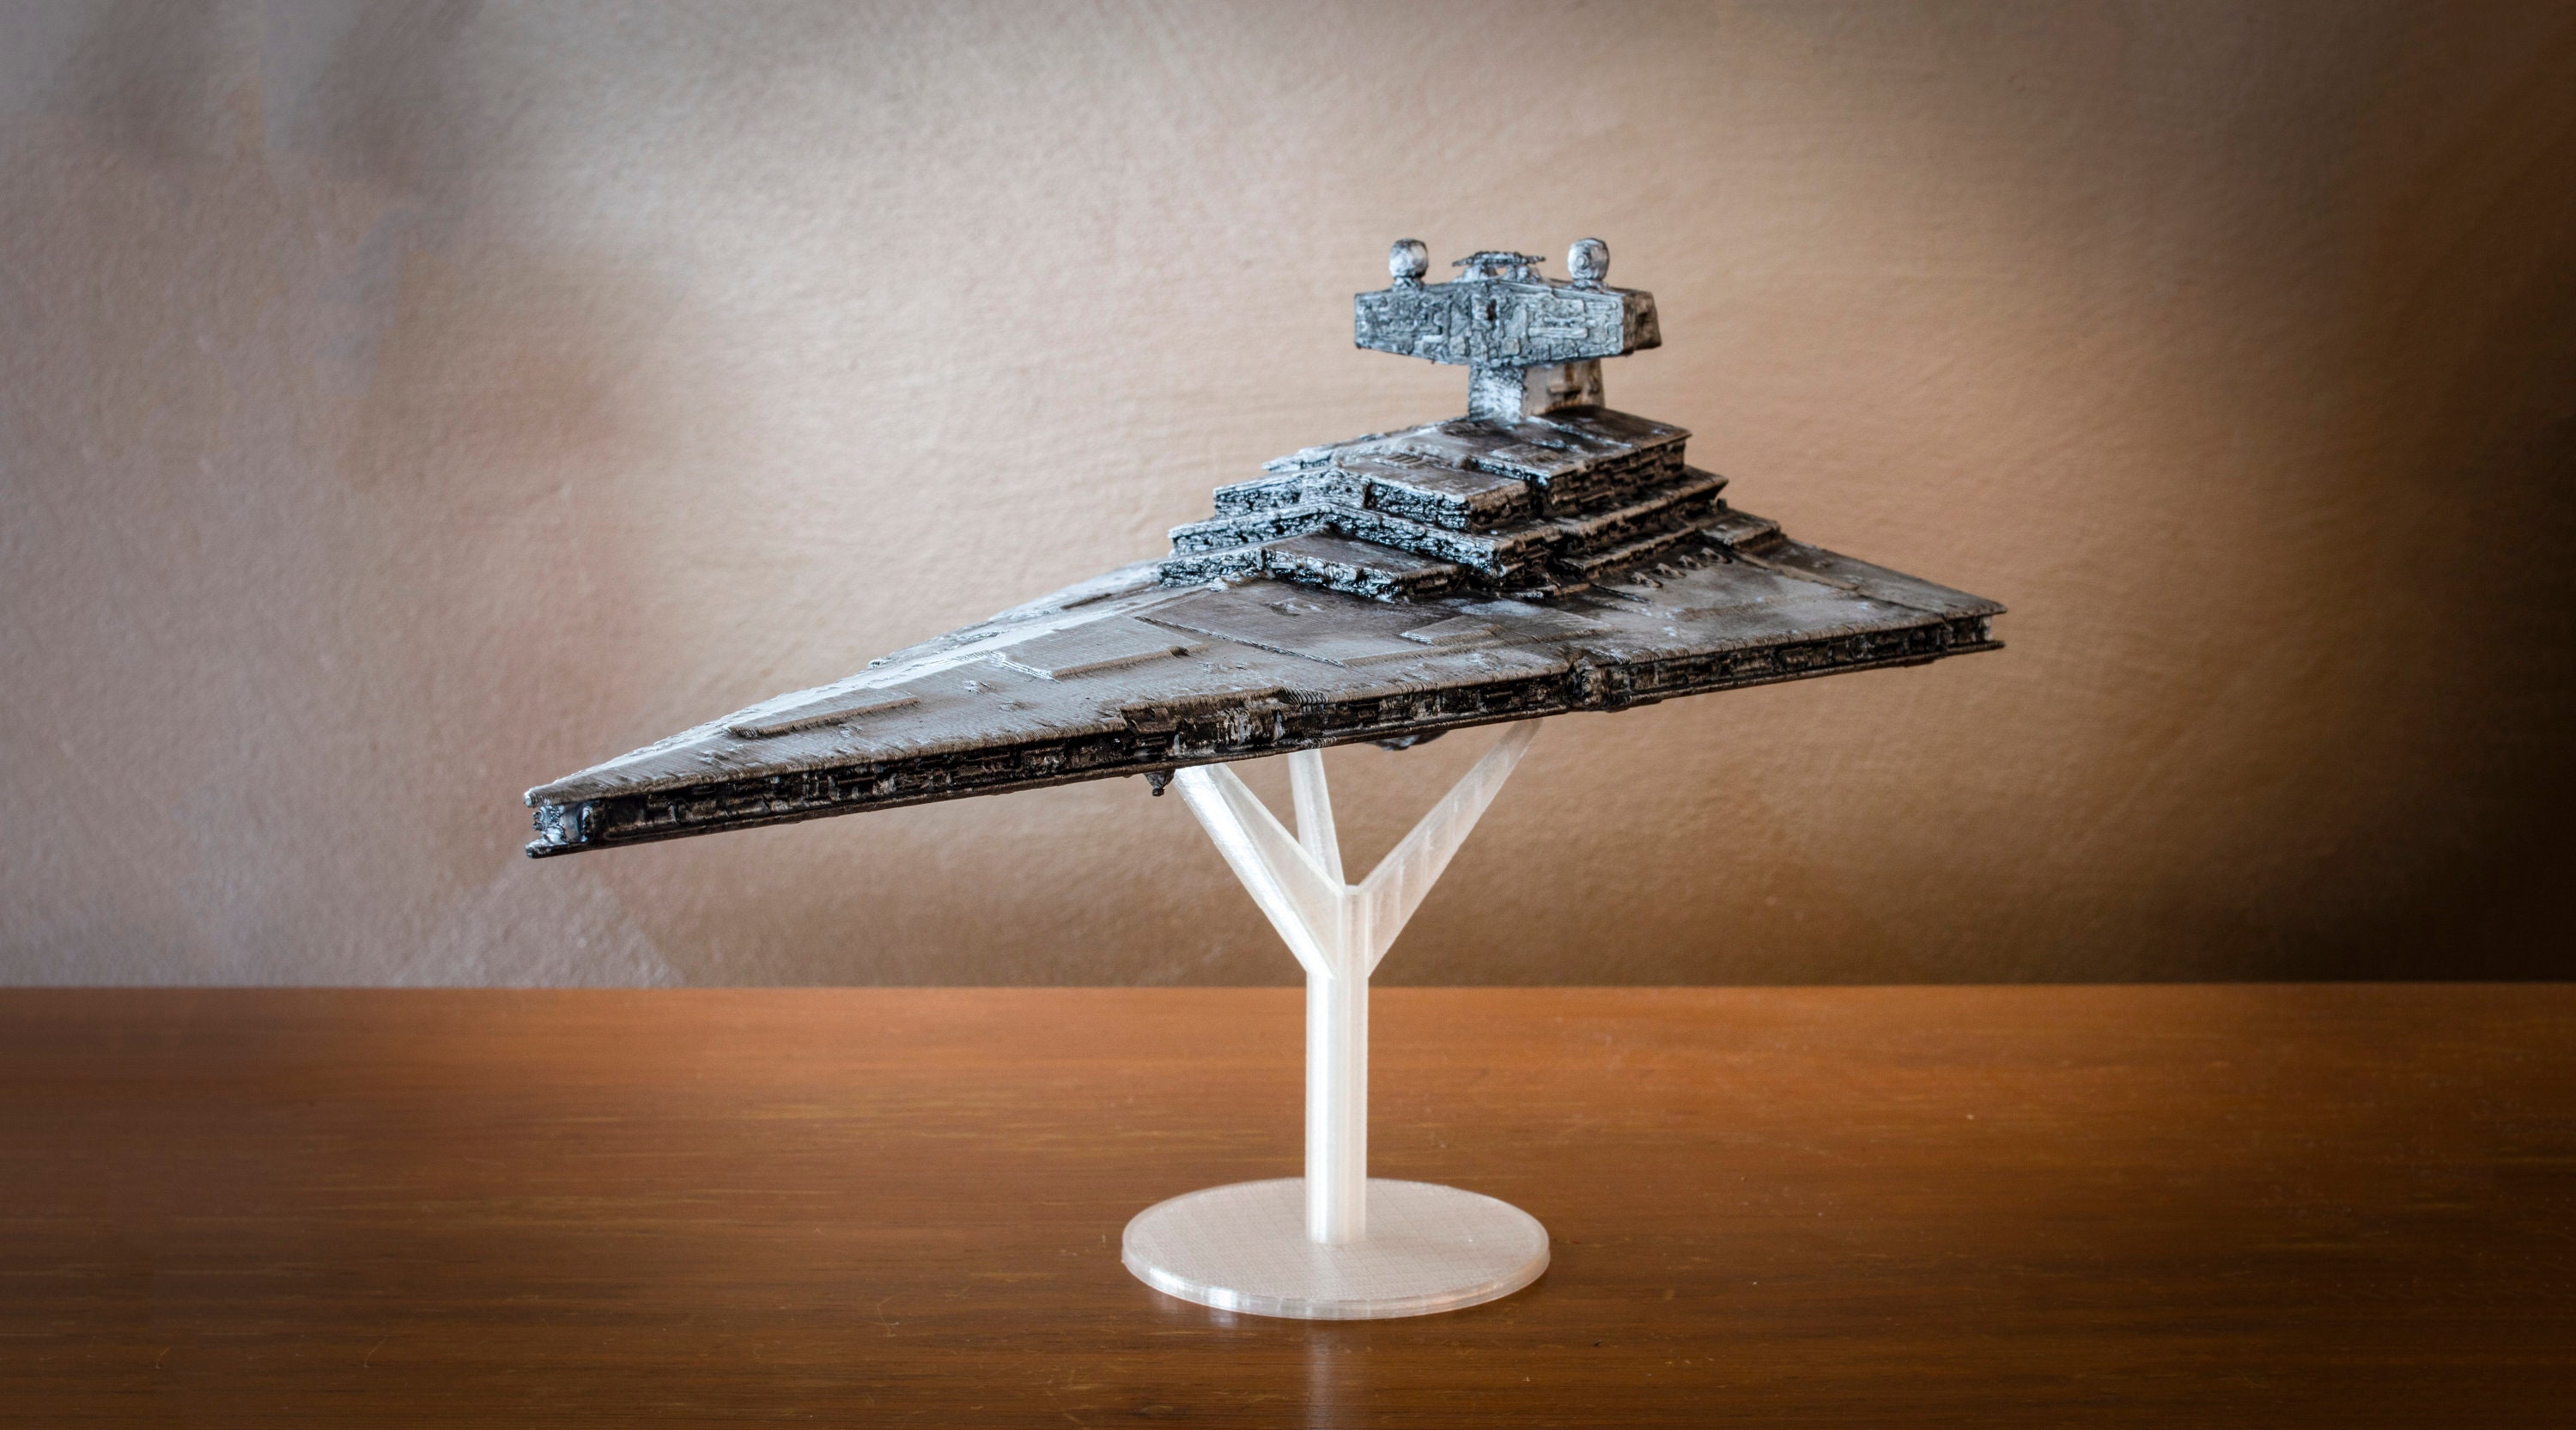 Grande maquette du vaisseau impérial Star Wars, Maquettes et puzzles